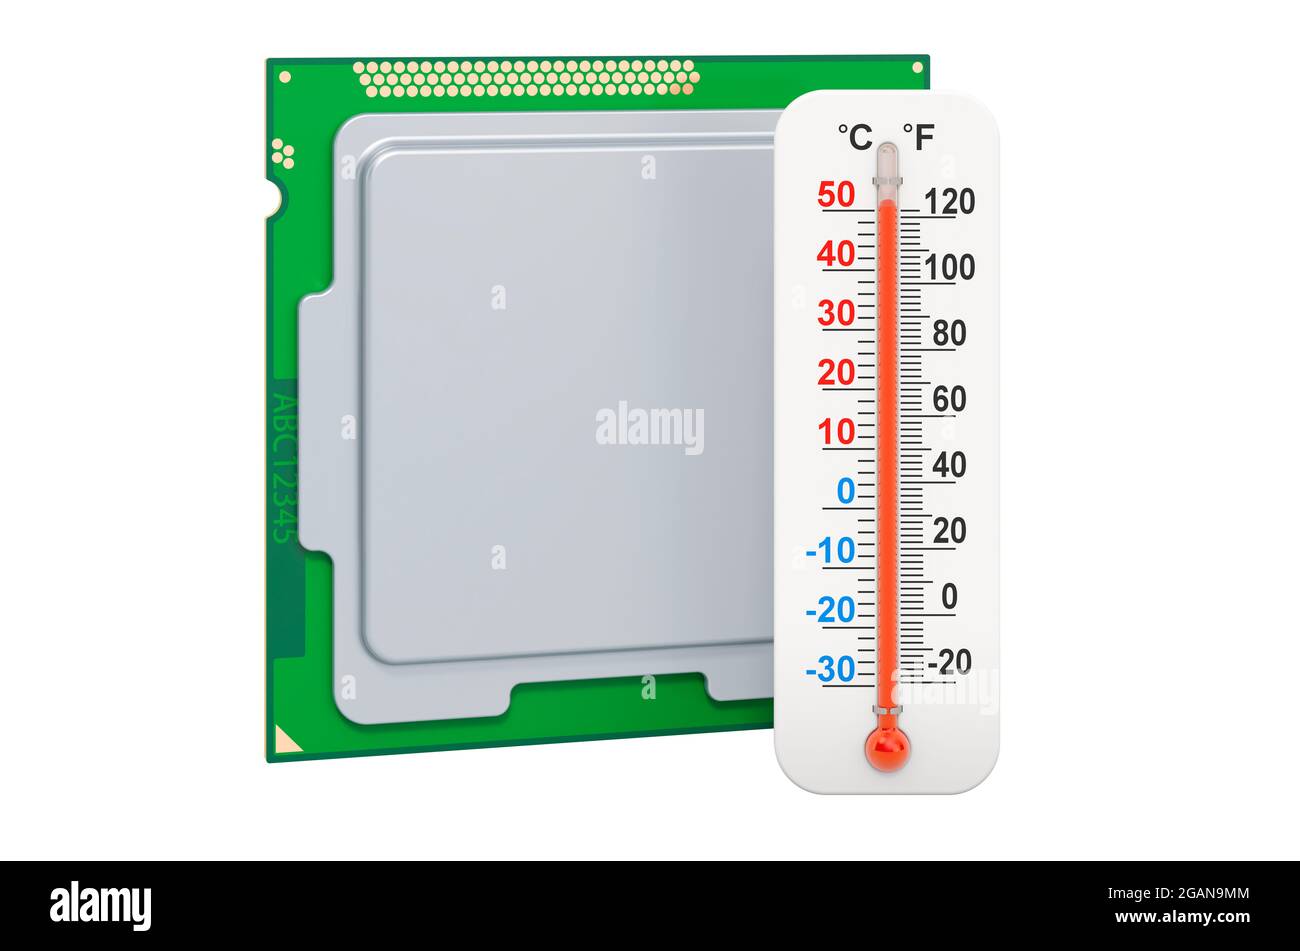 Processeur avec thermomètre. Concept de surchauffe de l'unité de processeur de l'ordinateur, rendu 3D isolé sur fond blanc Banque D'Images